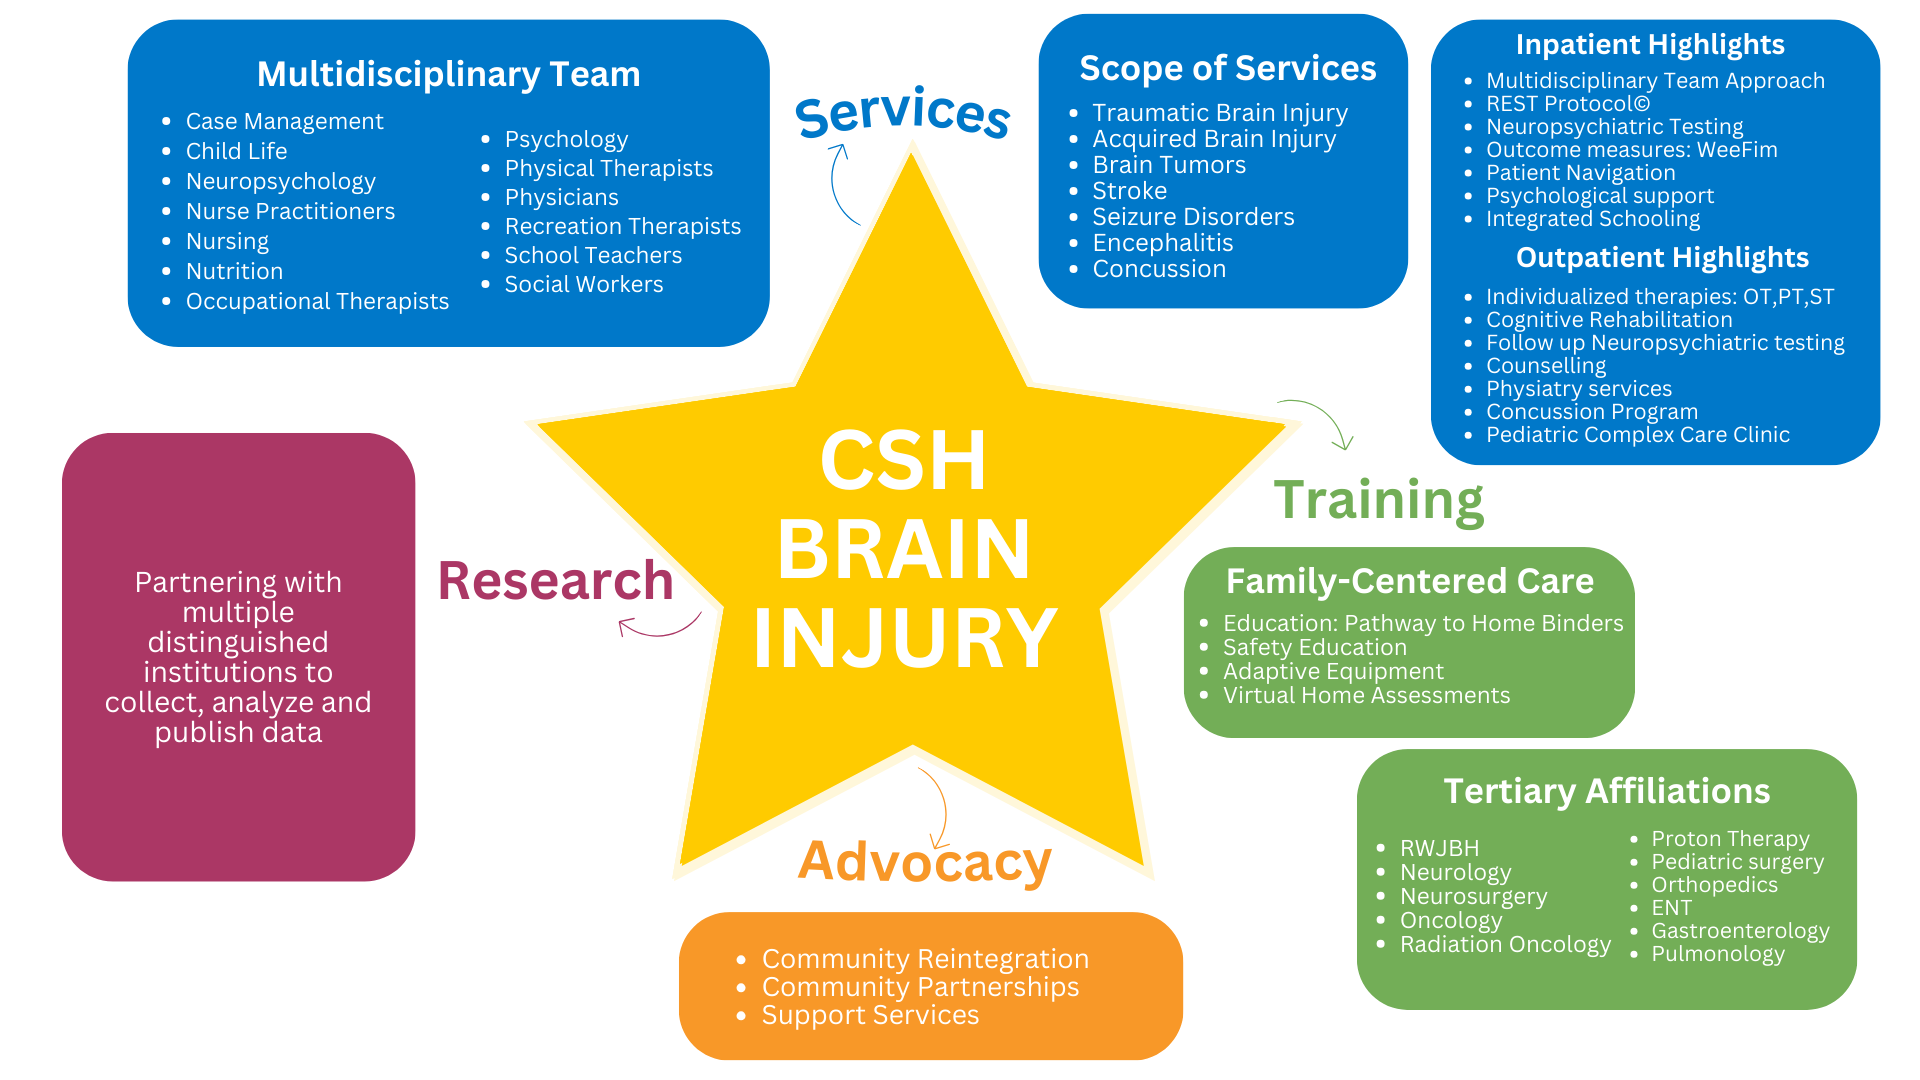 CSH Brain Injury COE STAR